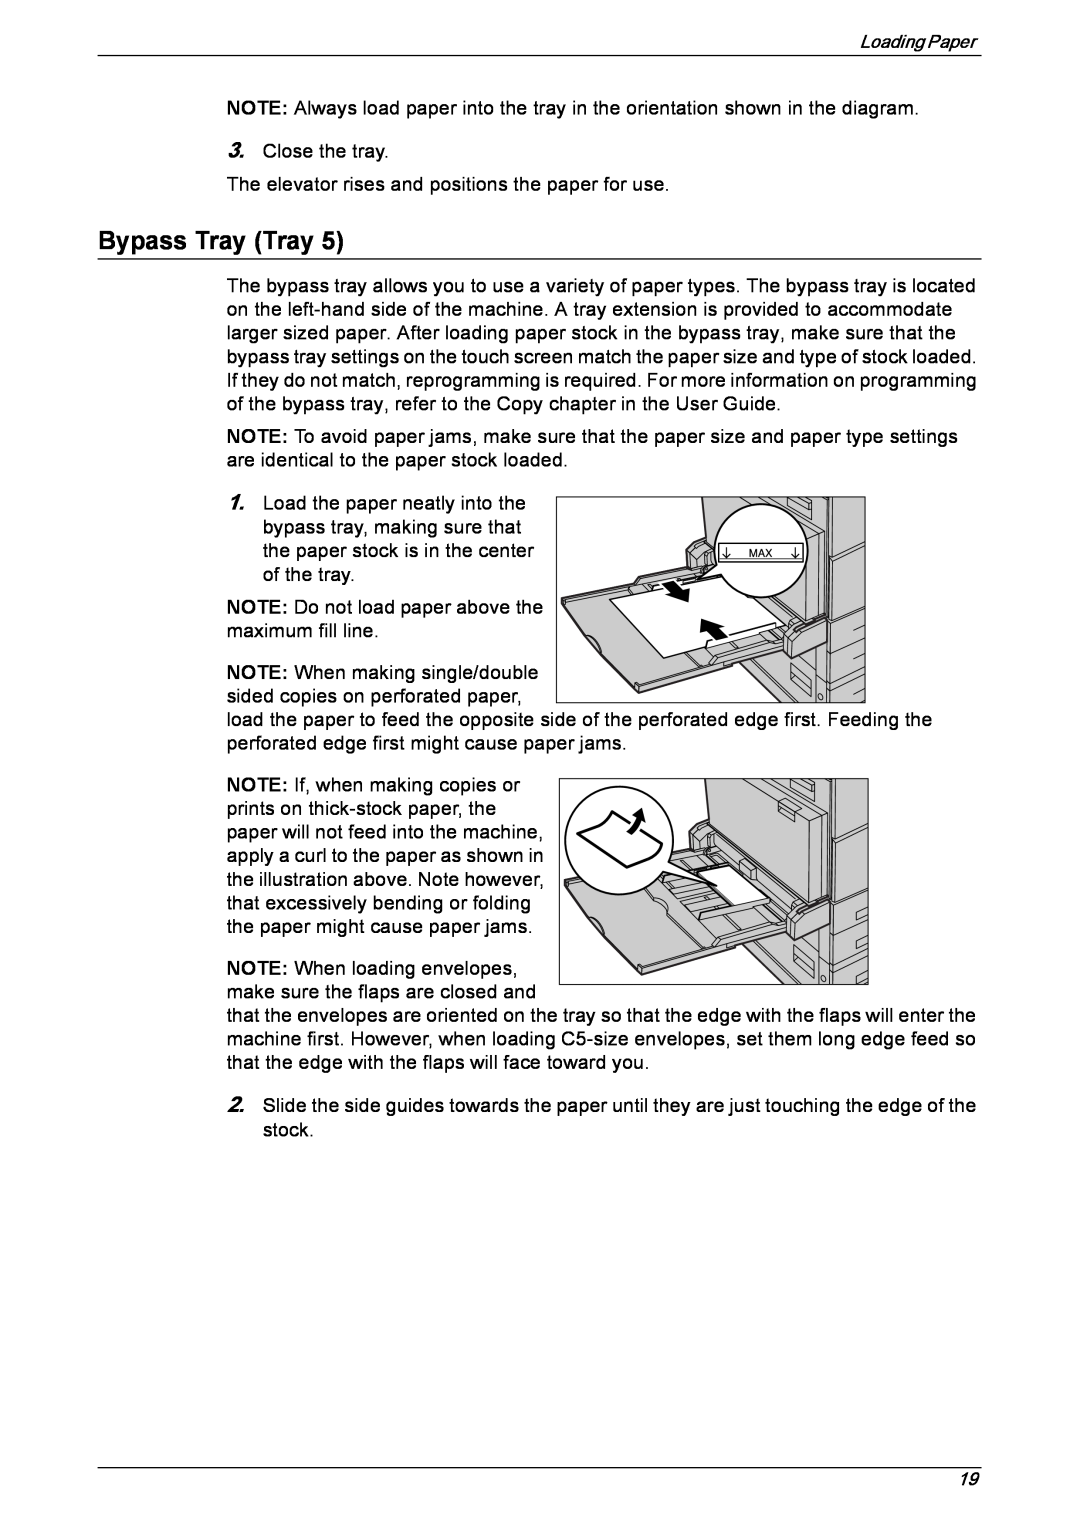 Xerox 5222 manual Bypass Tray Tray 